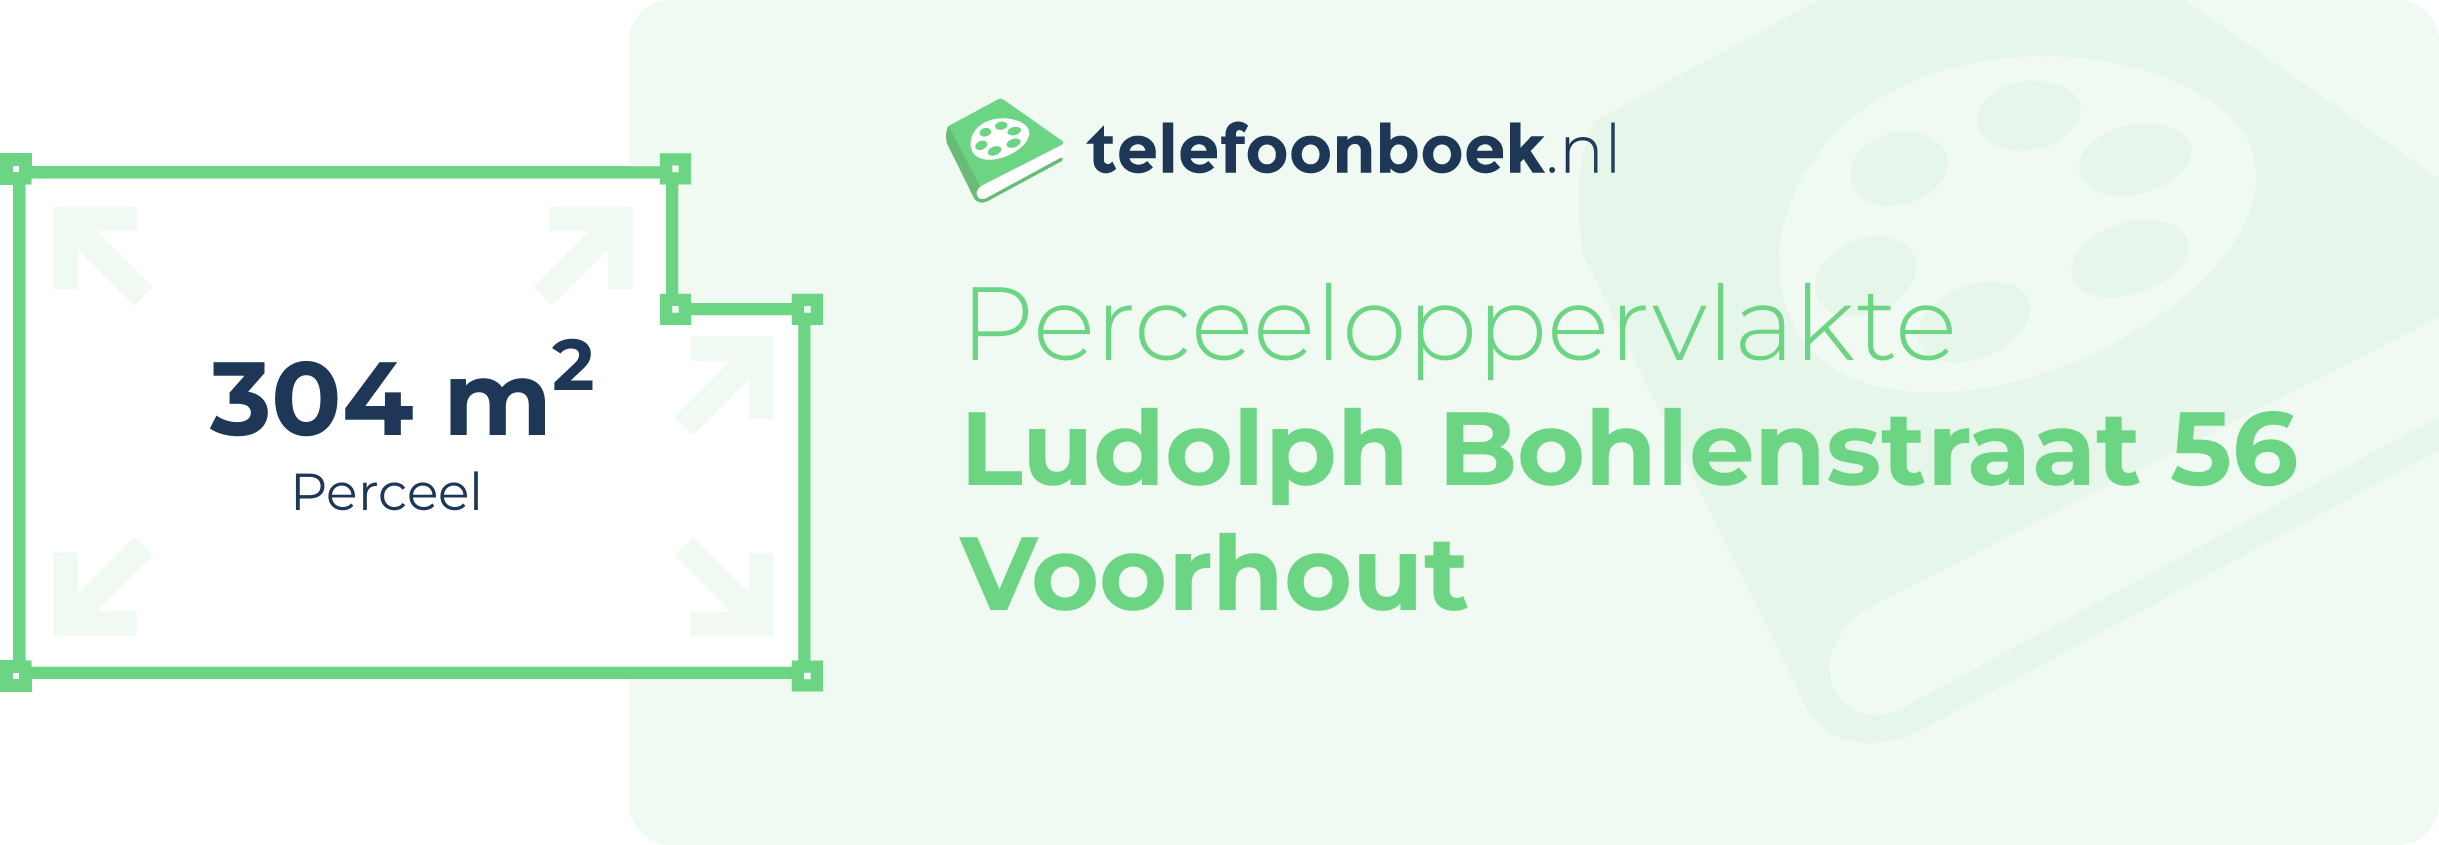 Perceeloppervlakte Ludolph Bohlenstraat 56 Voorhout